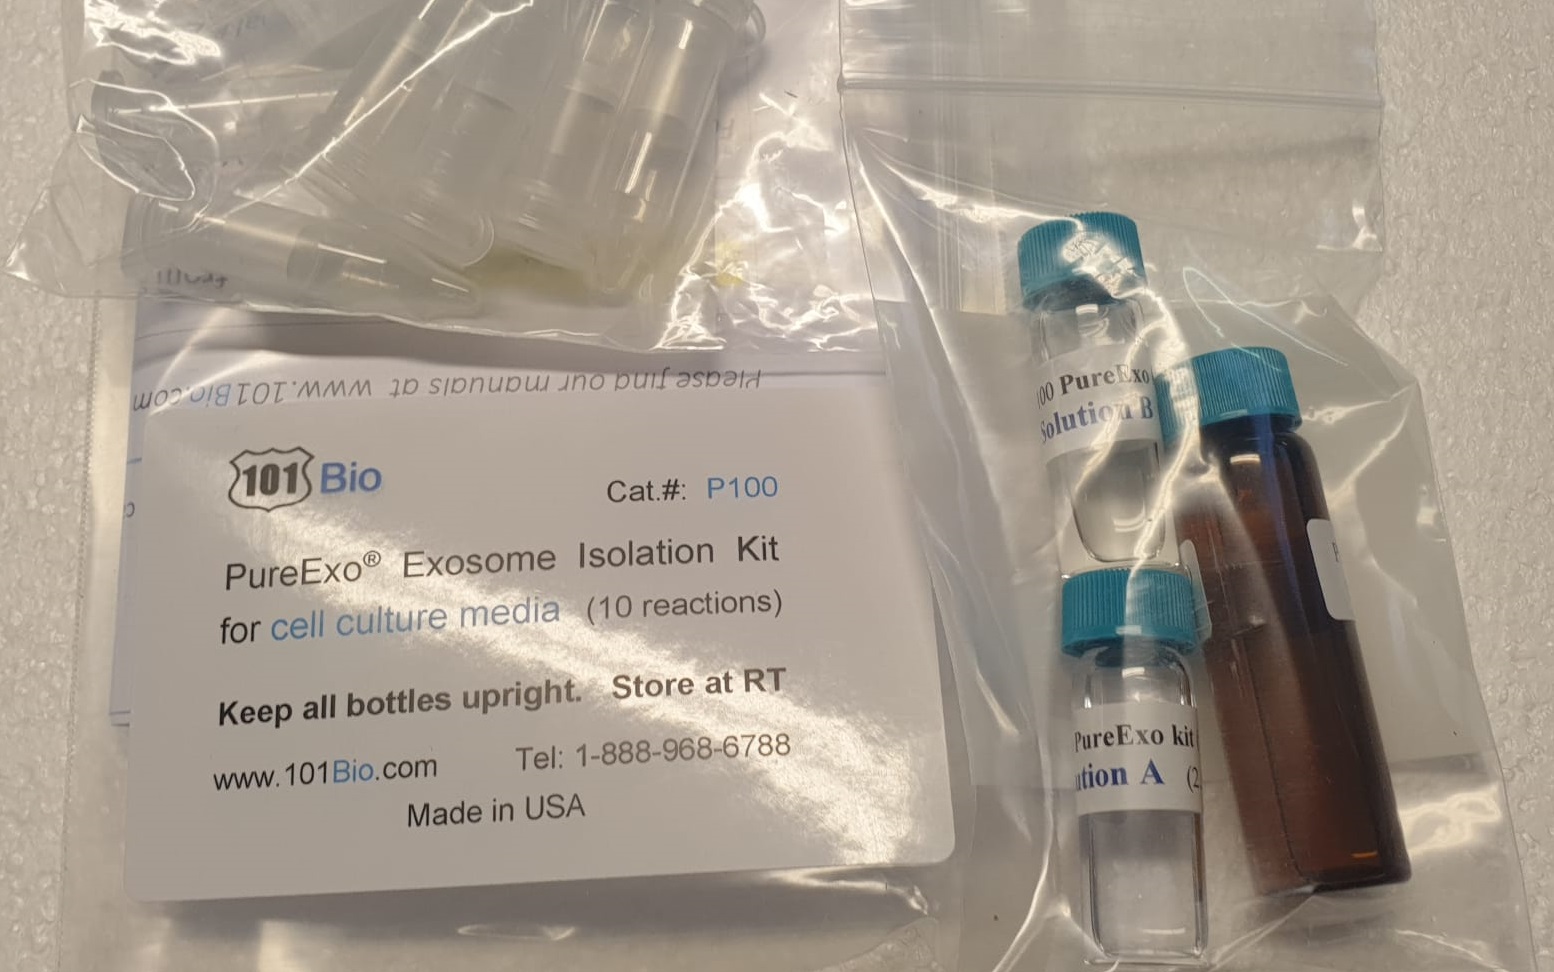 pureexo exosome isolation kit